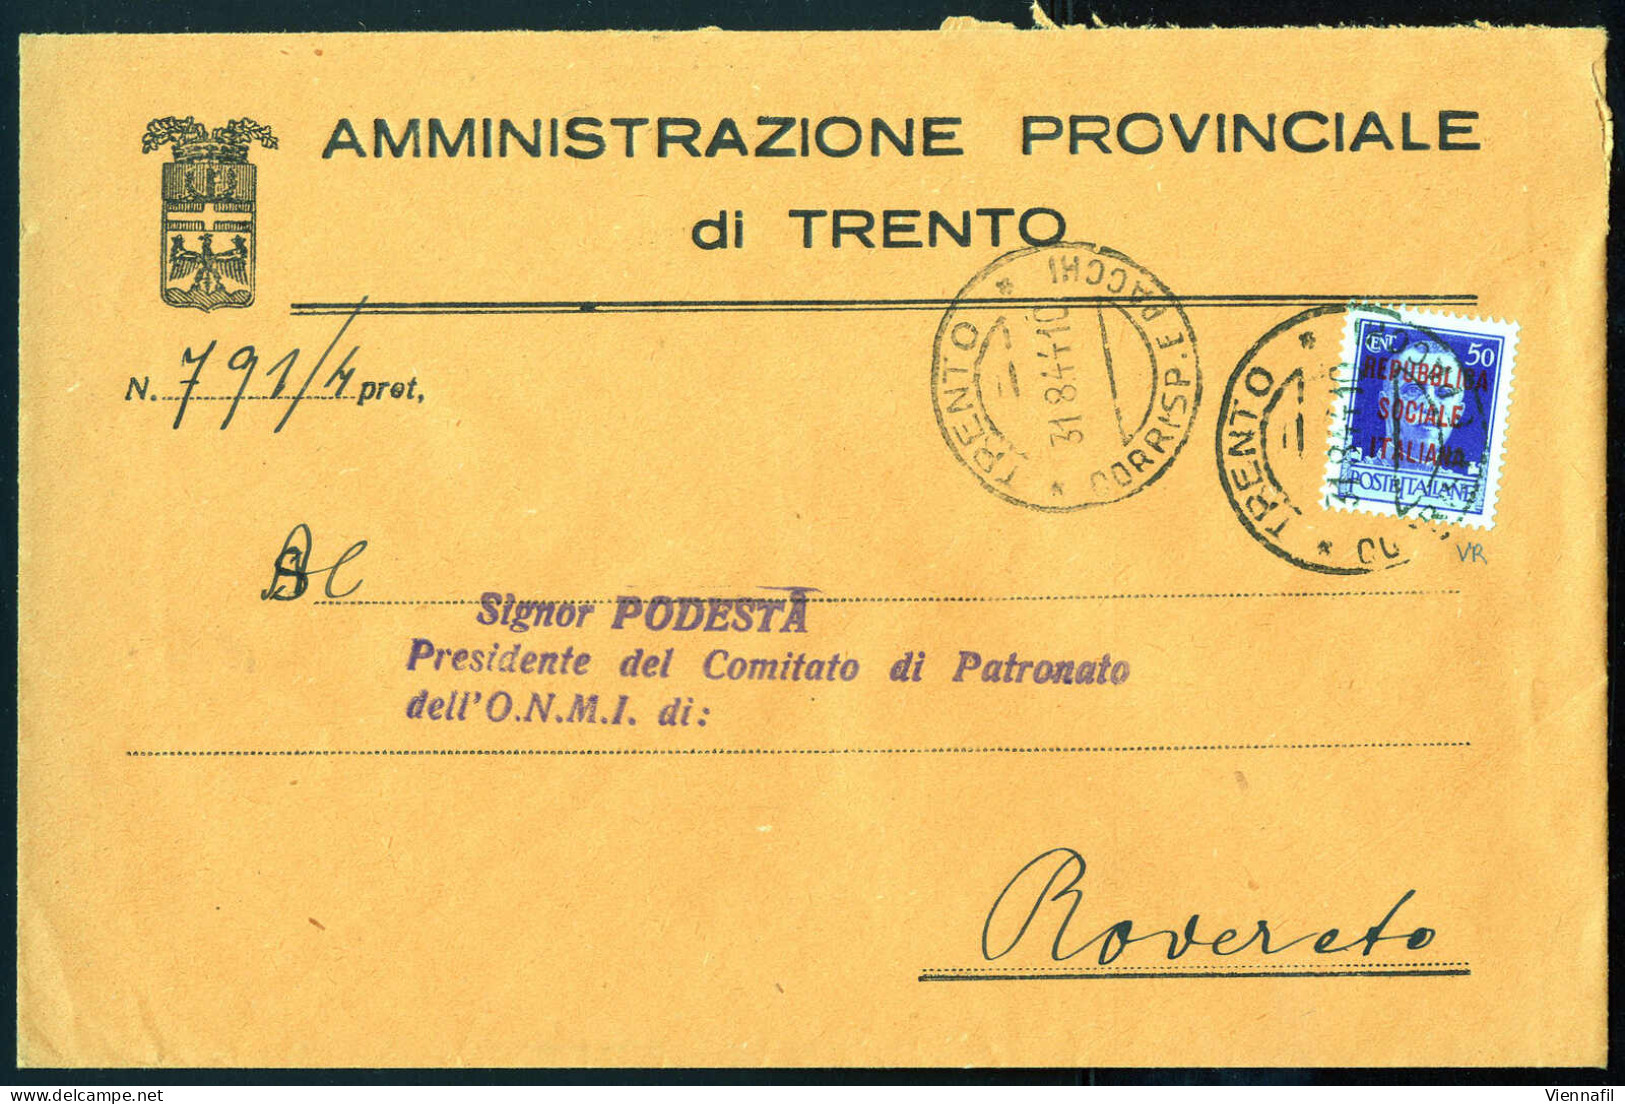 cover R.S.I. 1943/45 ca., insieme di 30 buste tutte indirizzate a Rovereto da varie località del Trentino, affrancate pr